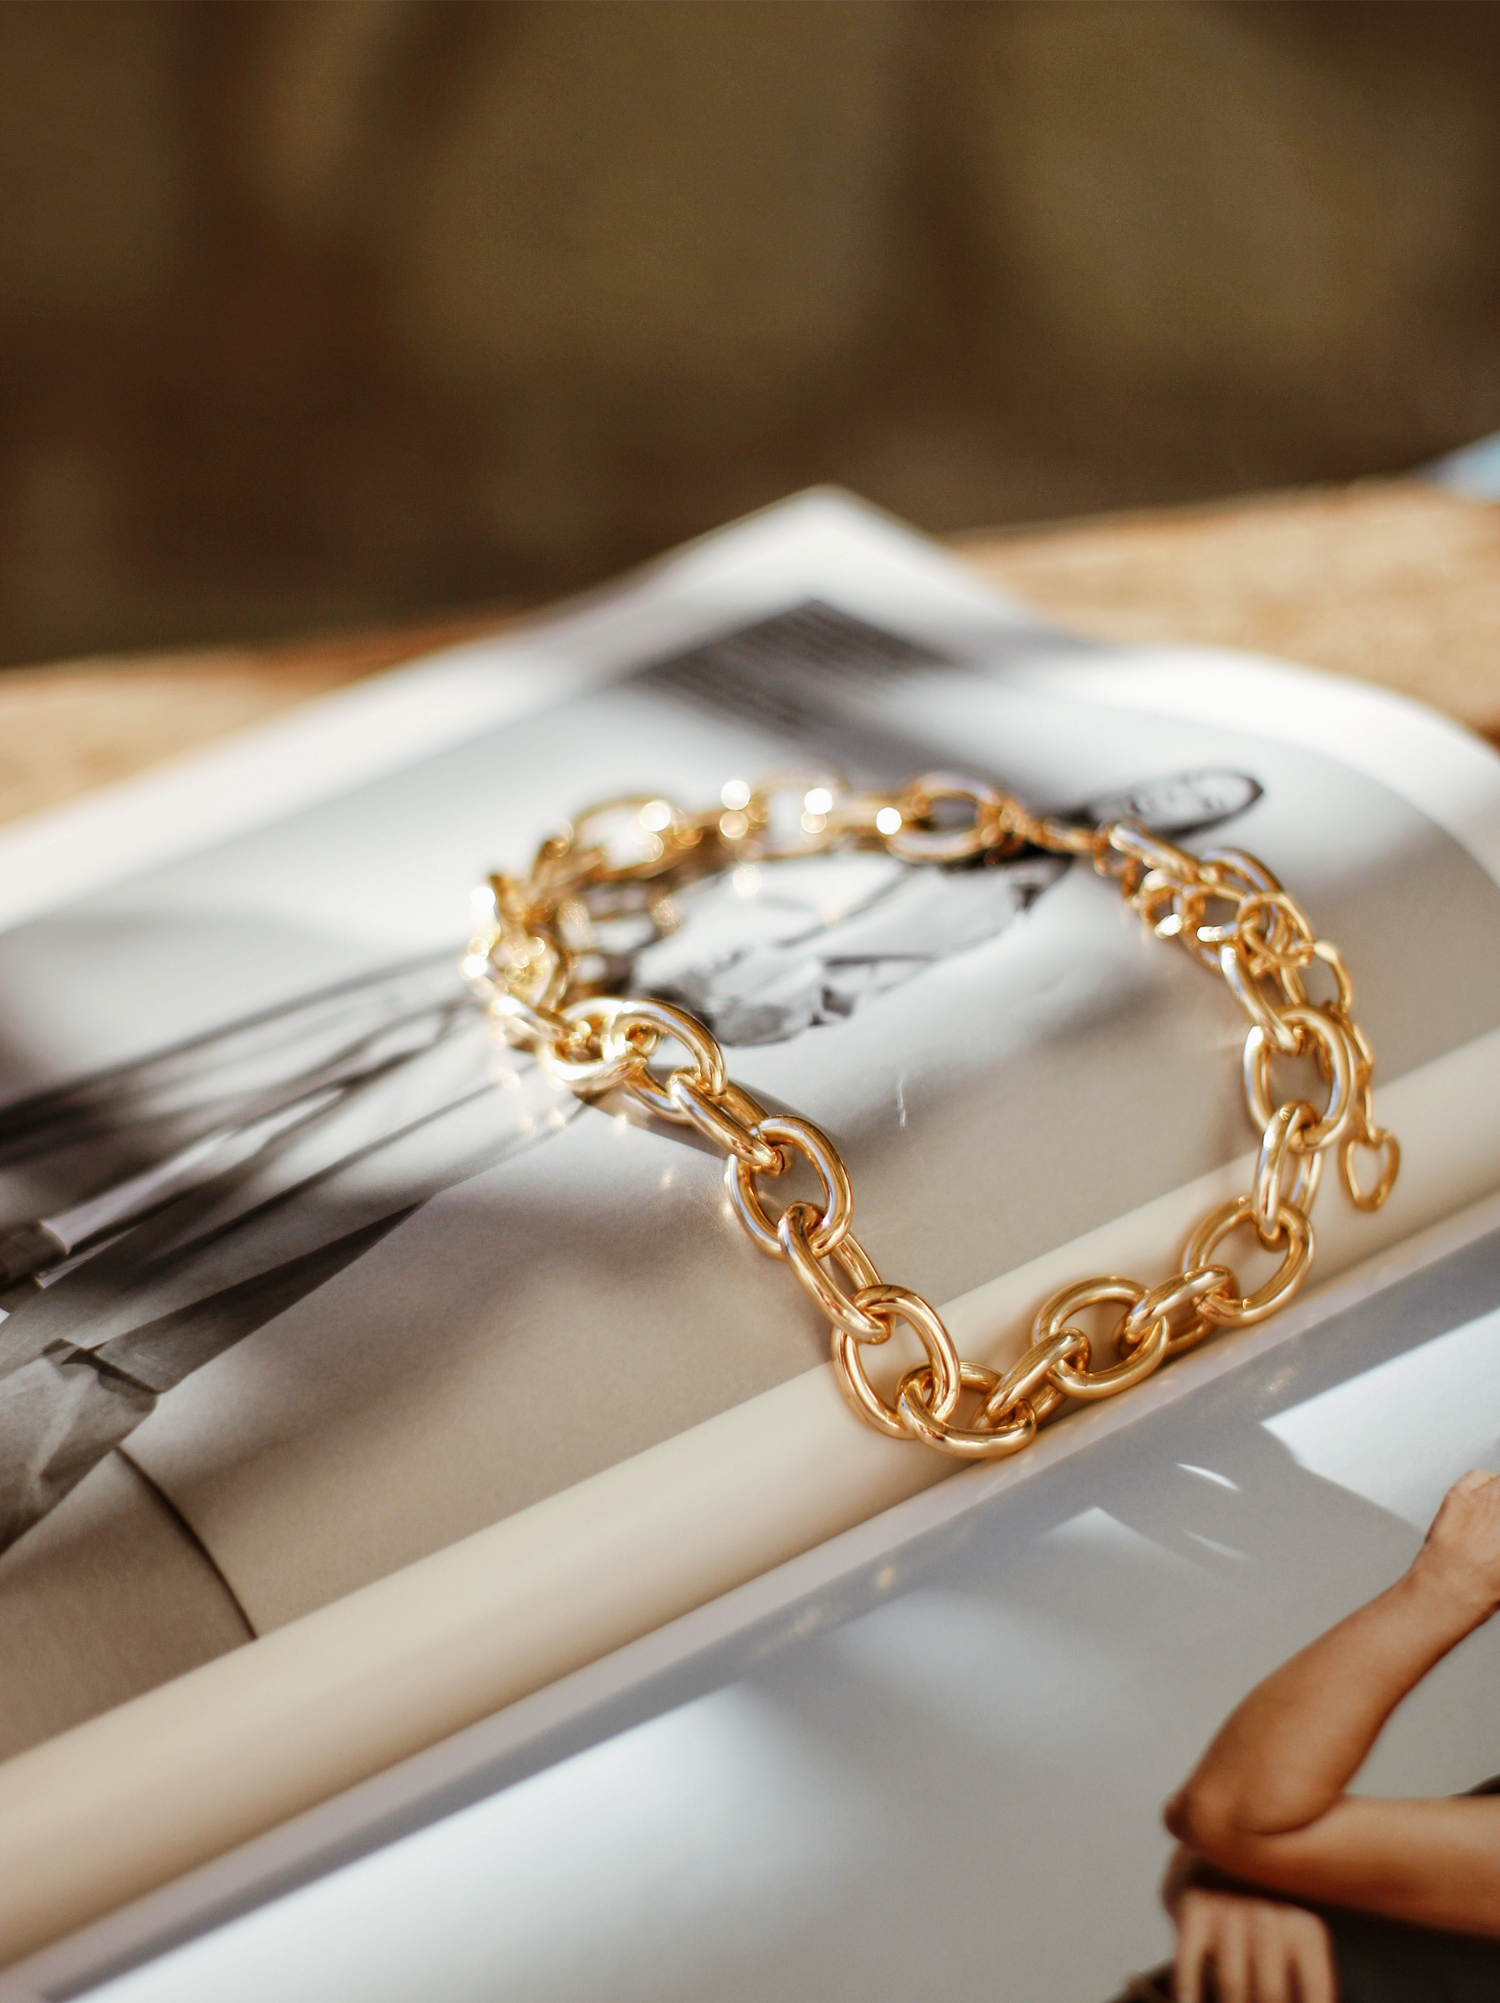 Bracelet en or acier inoxydable posé sur un magasin de mode ouvert